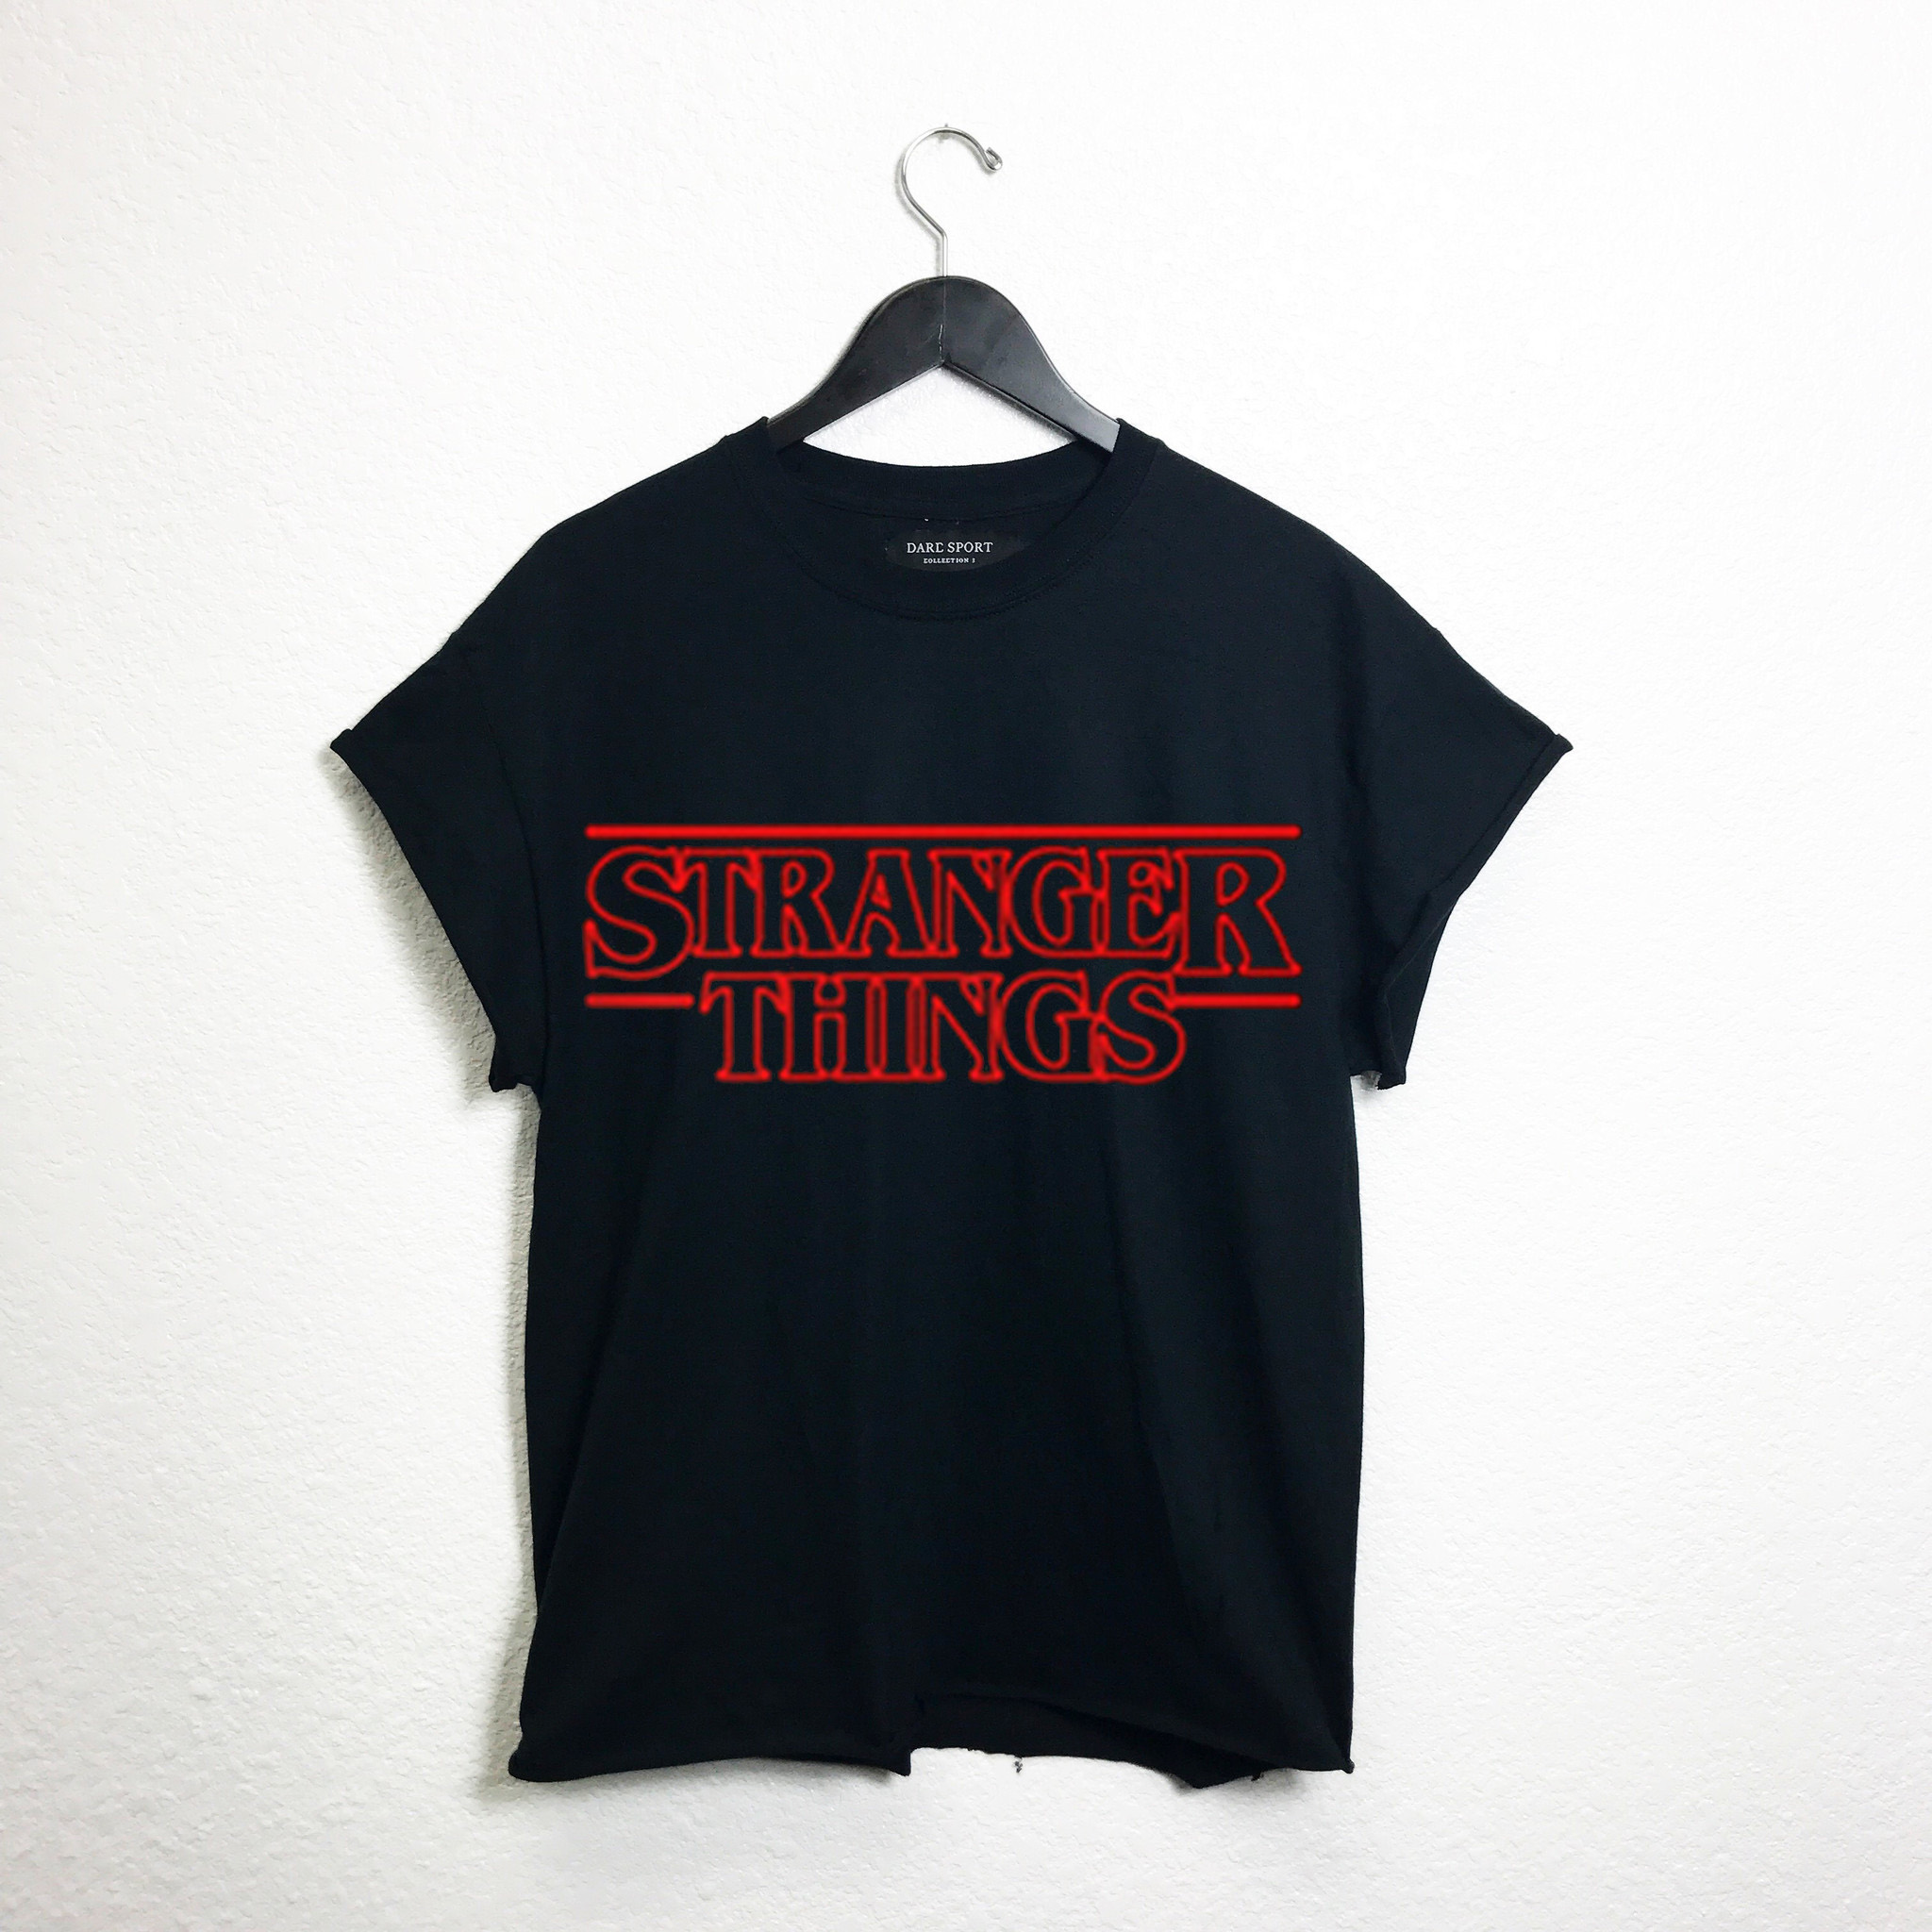 stranger things black cut t shirts - donefashion.com